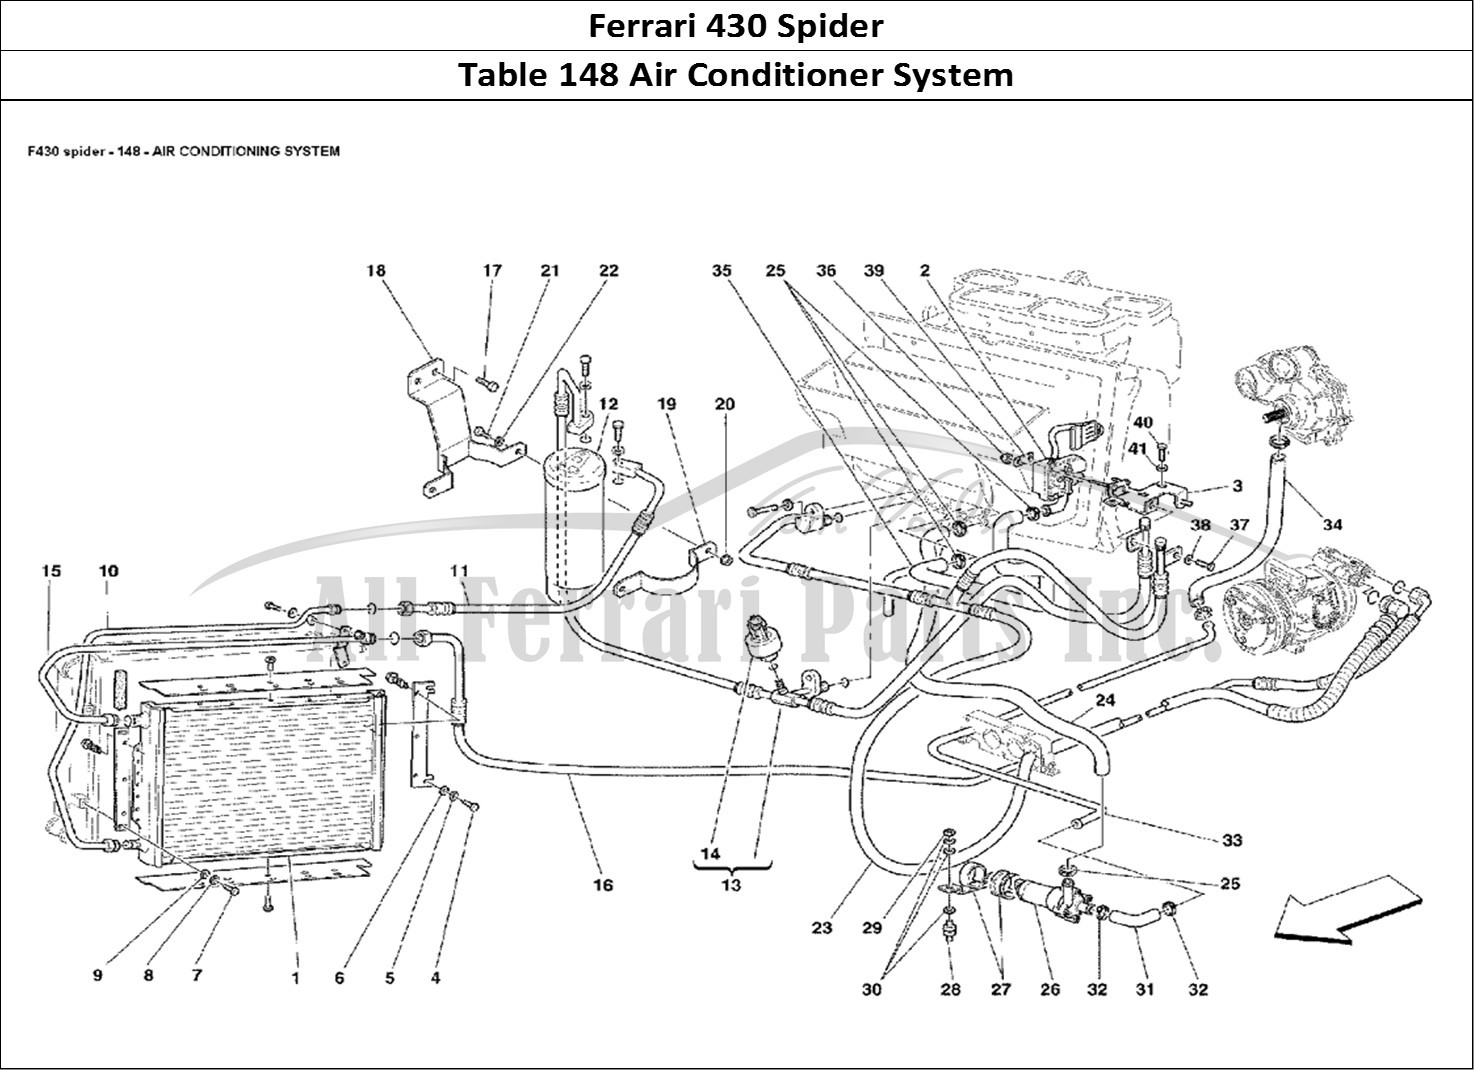 Ferrari Parts Ferrari 430 Spider Page 148 Air Conditioning System